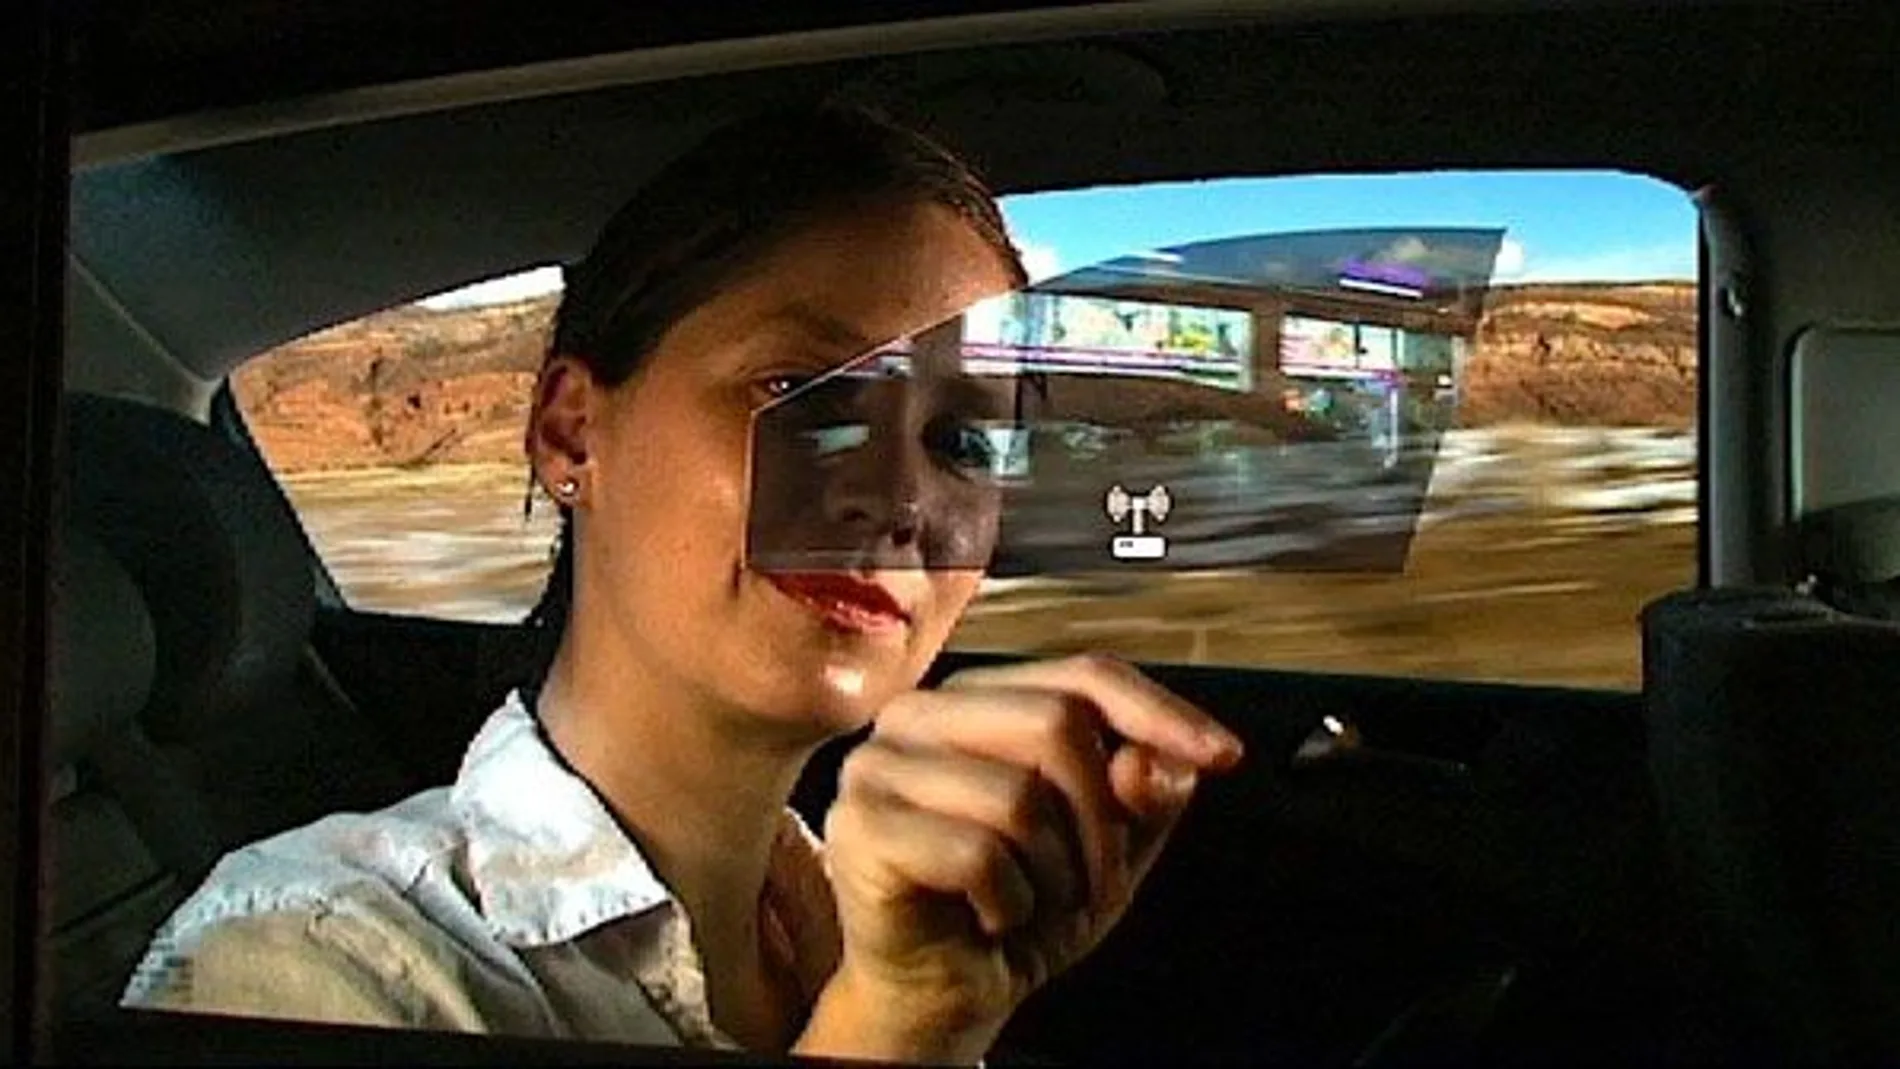 Ventanillas interactivas para amenizar los viajes en coche